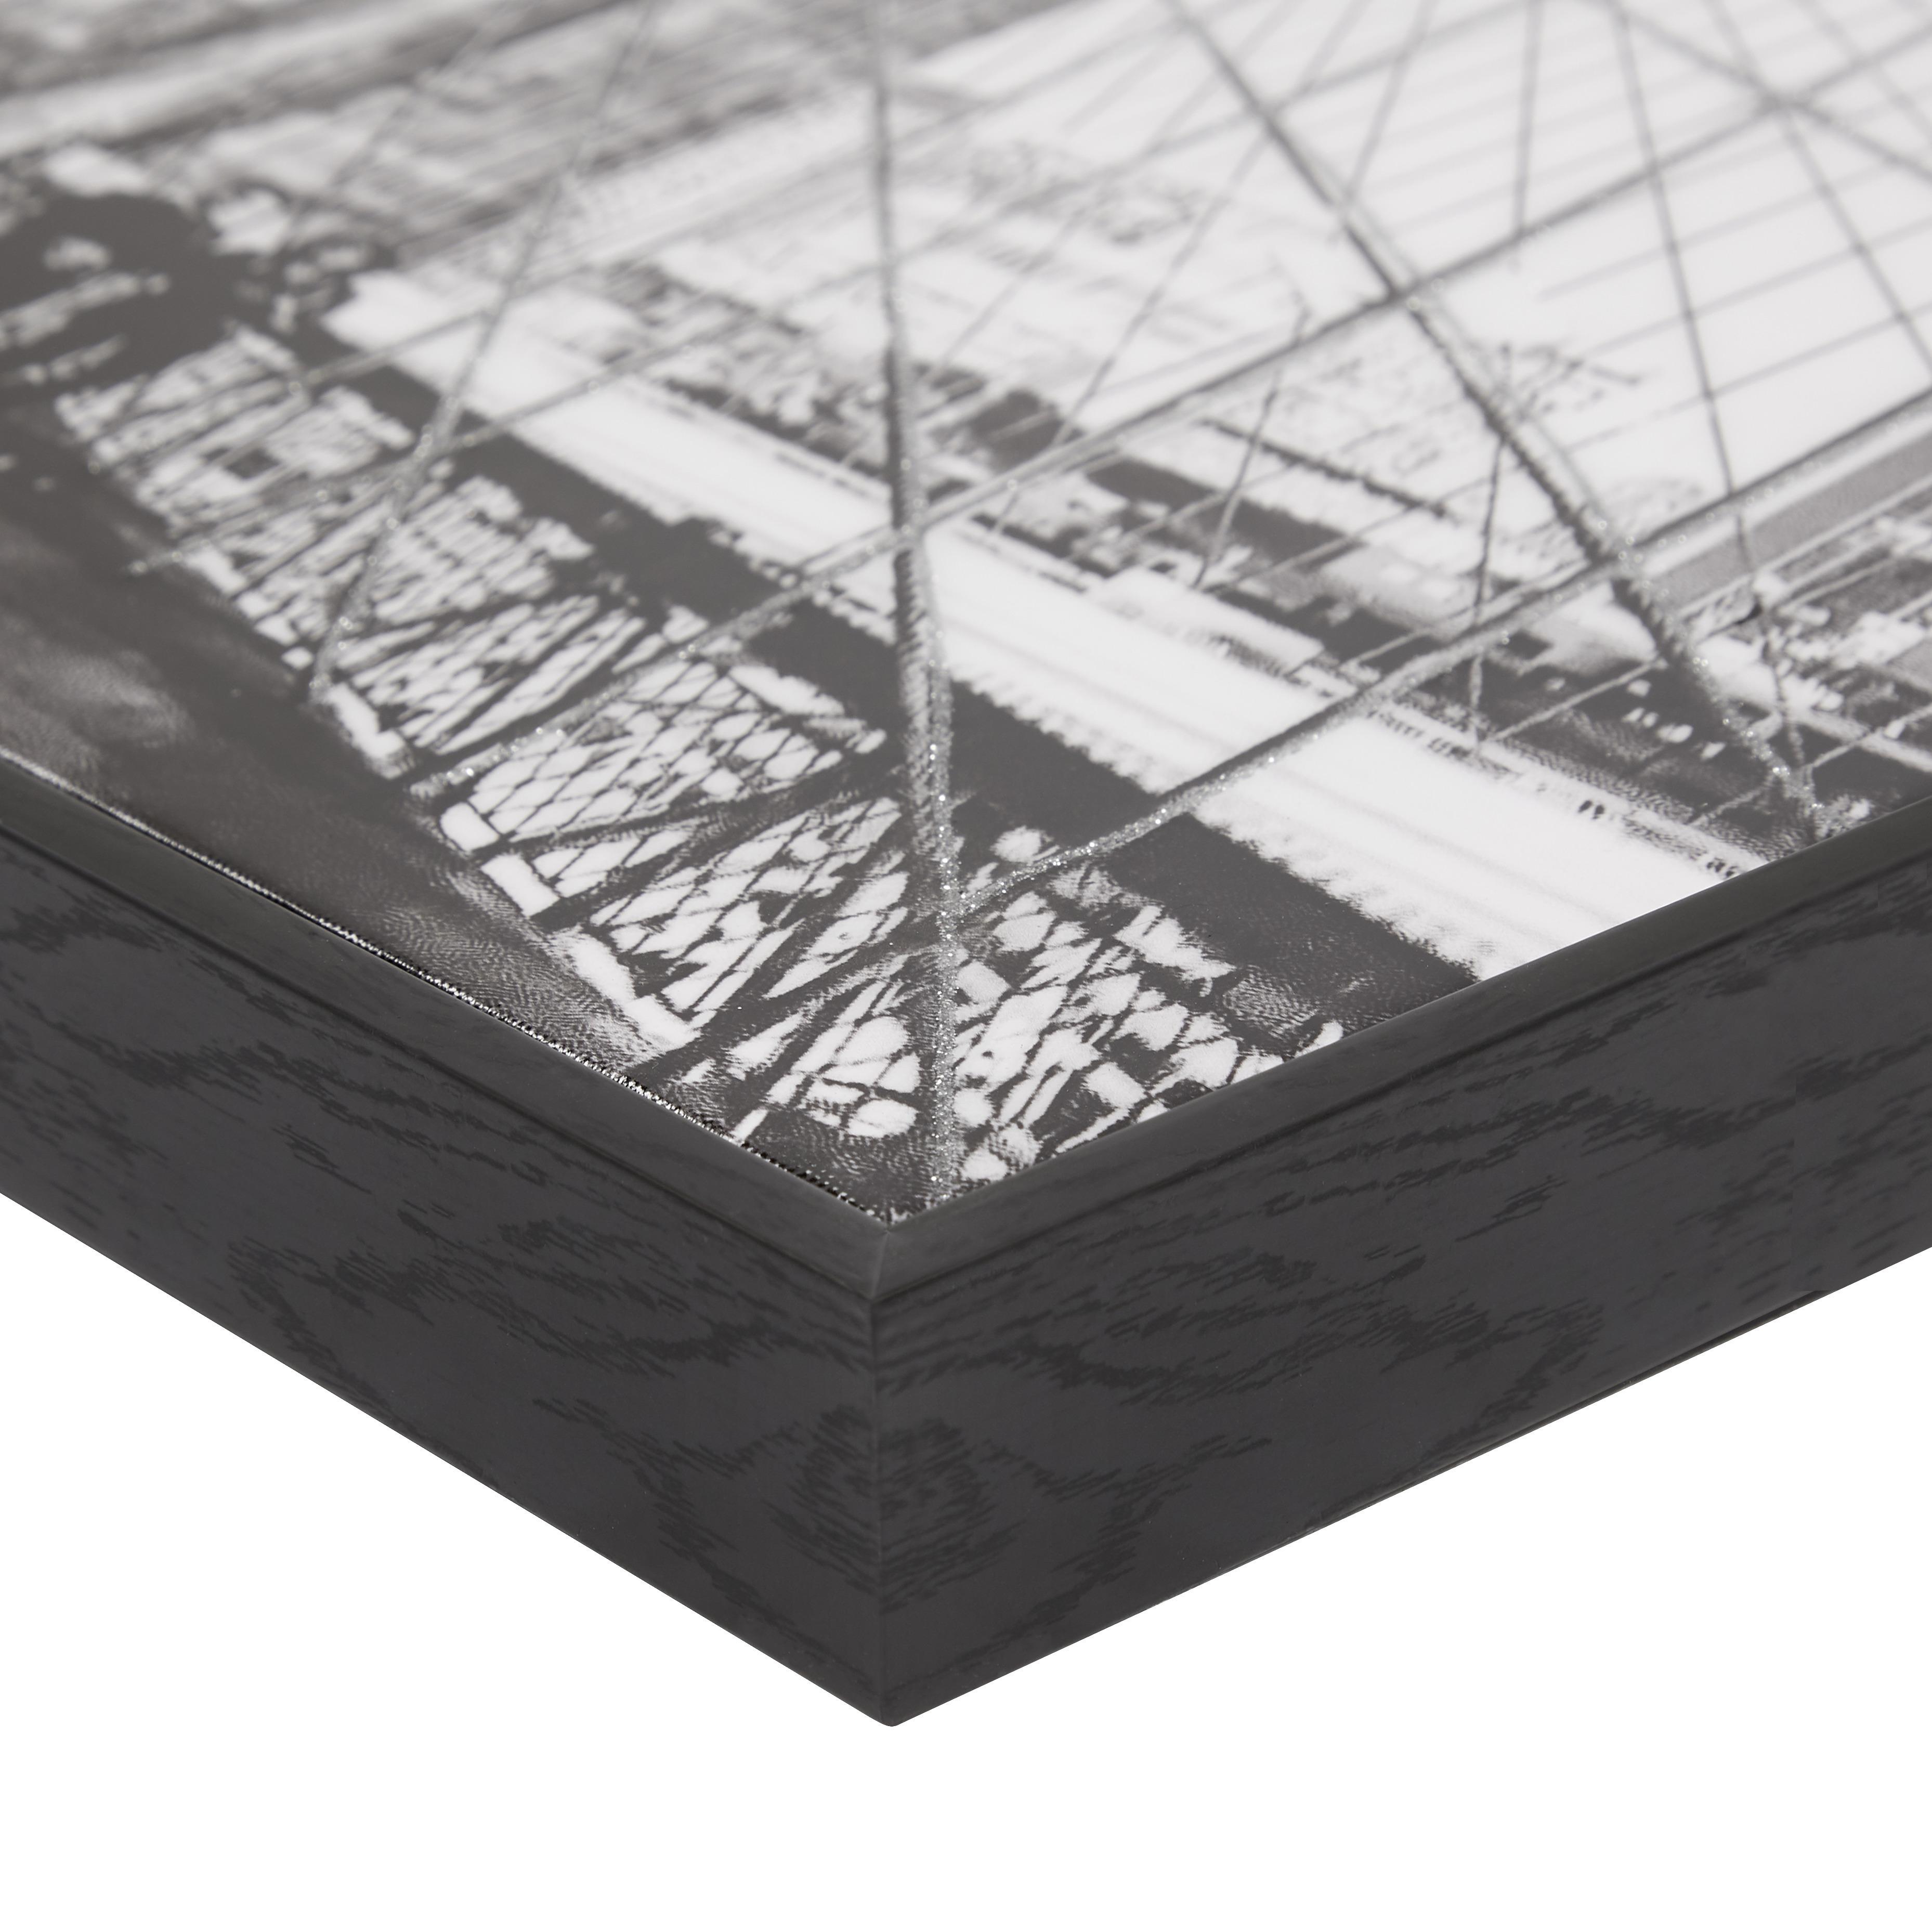 Leinwandbild Brooklyn Bridge Schwarz/Weiß 120x40 cm - Silberfarben/Schwarz, MODERN, Holz/Kunststoff (120/40/3,5cm) - Luca Bessoni